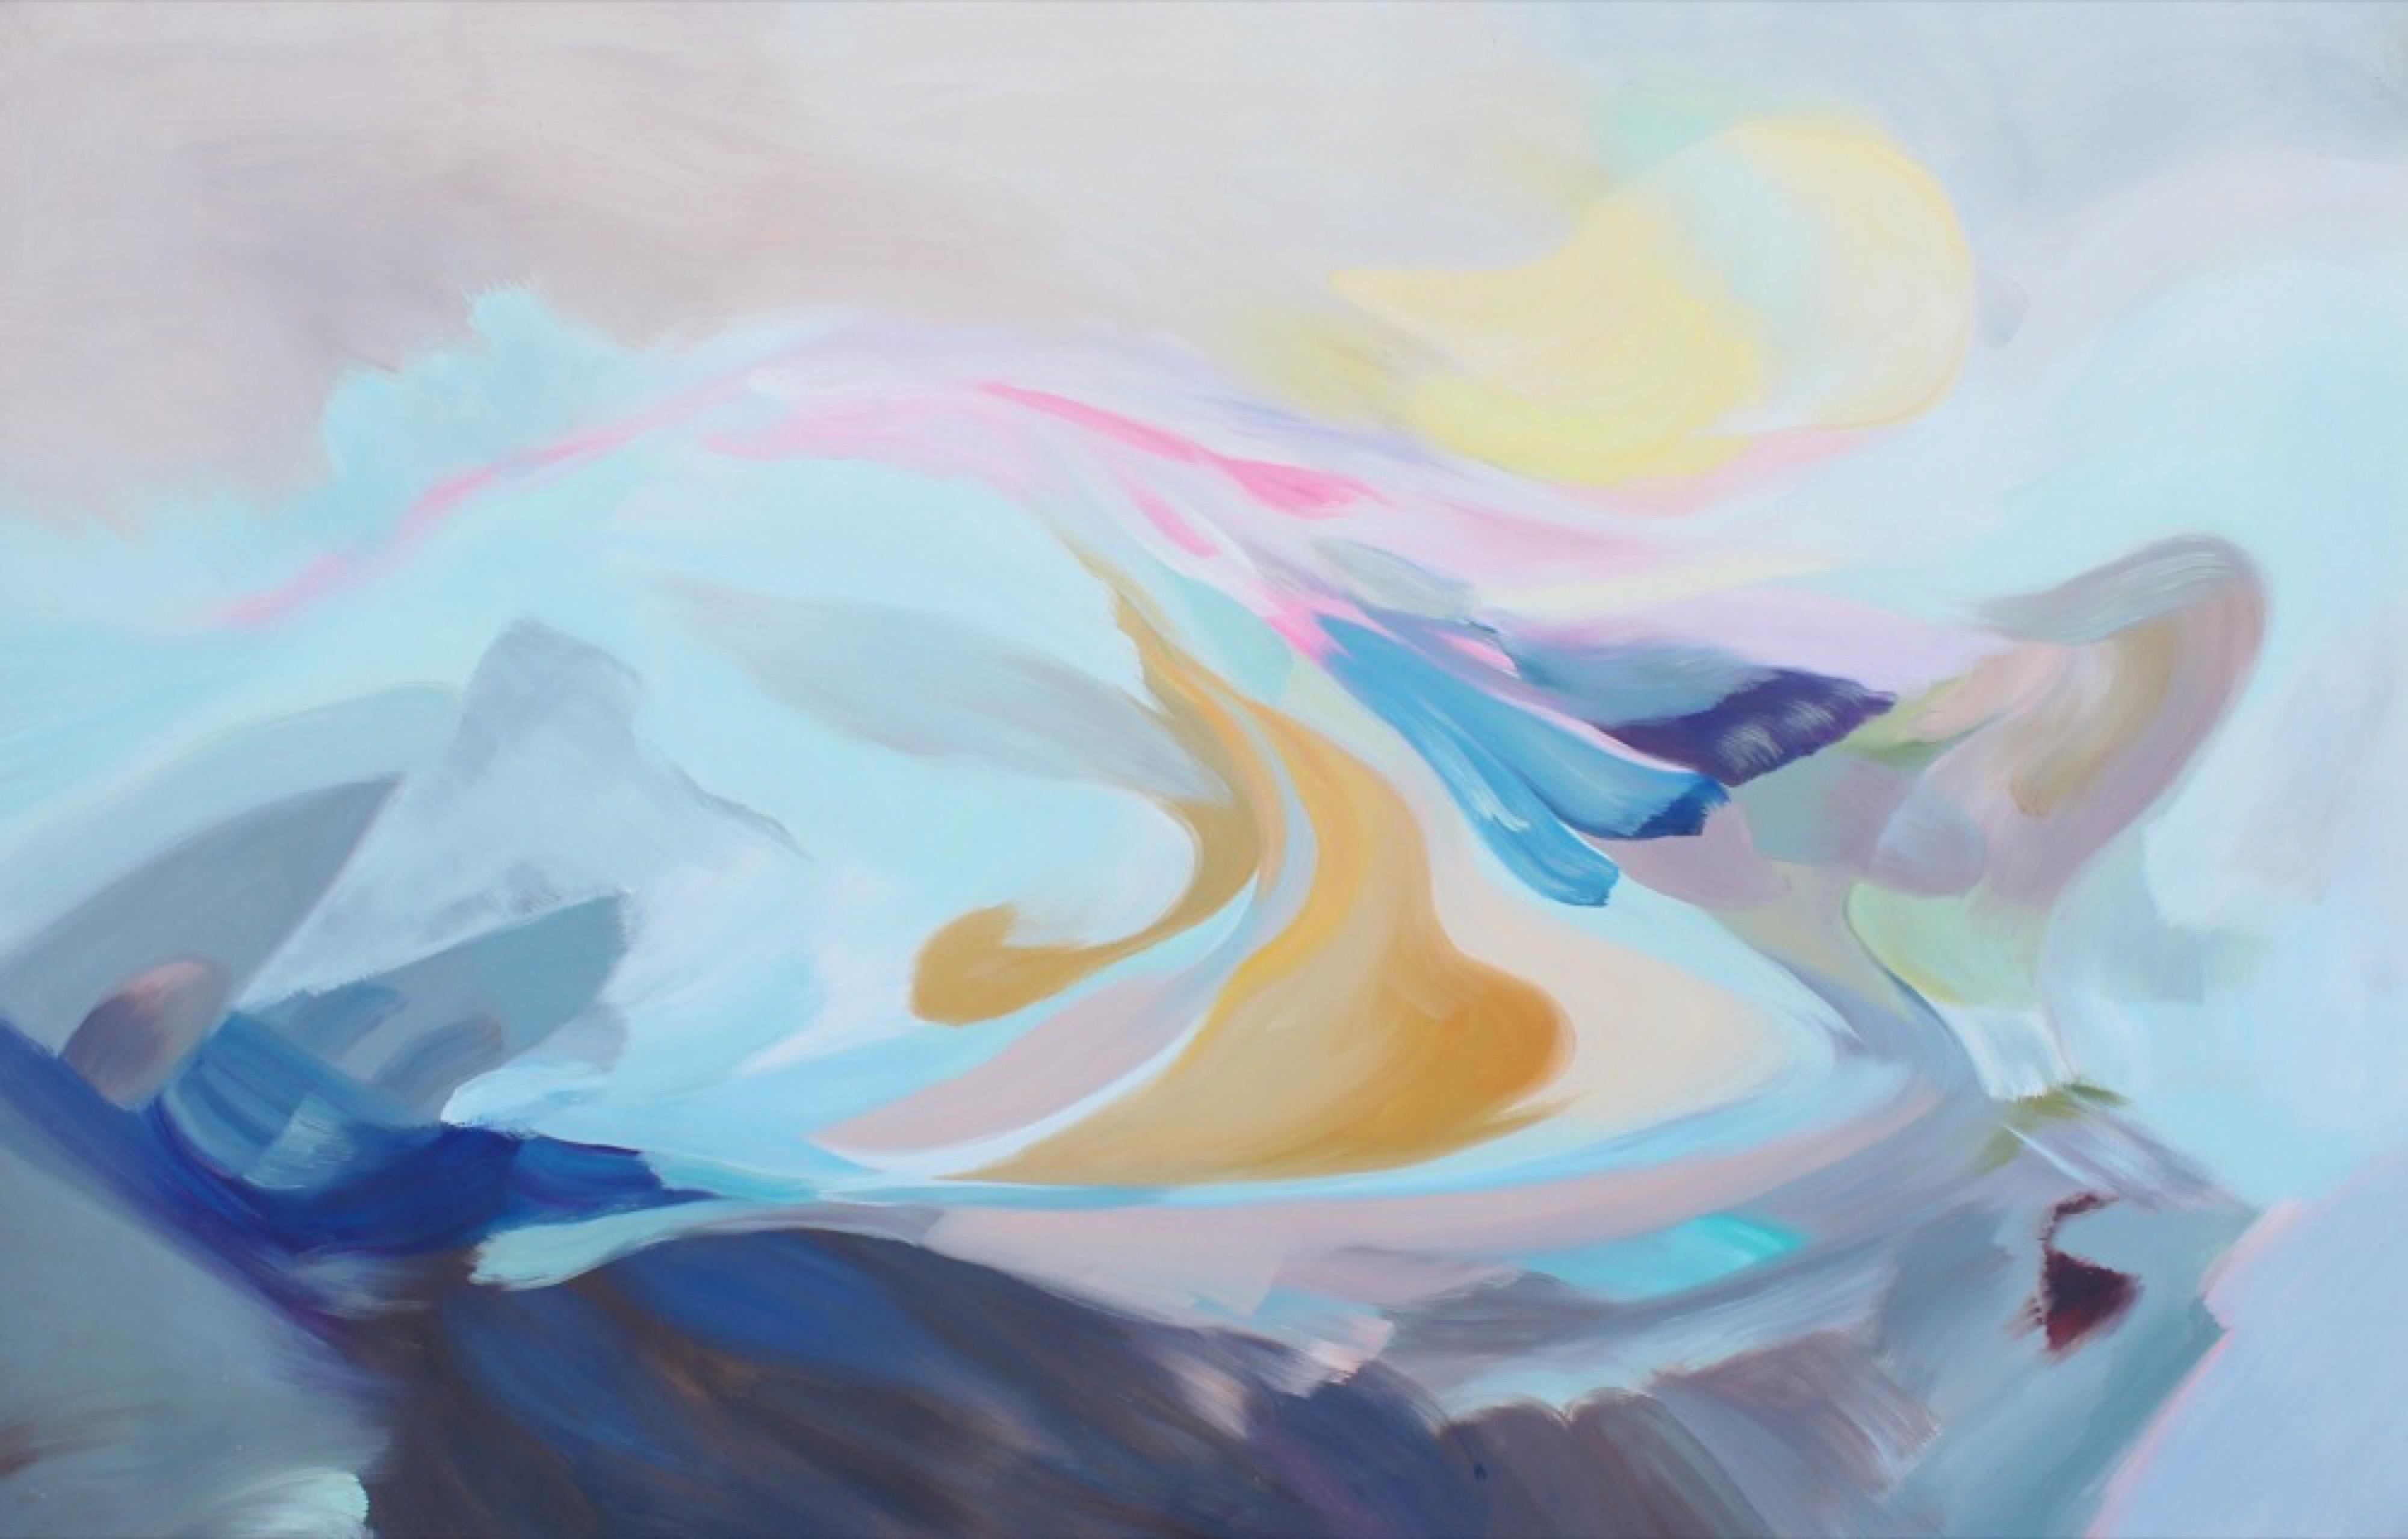 Peinture à l'acrylique abstraite sur toile « The Song of Blue Water » (Le chant de l'eau bleue) - Painting de Irena Orlov